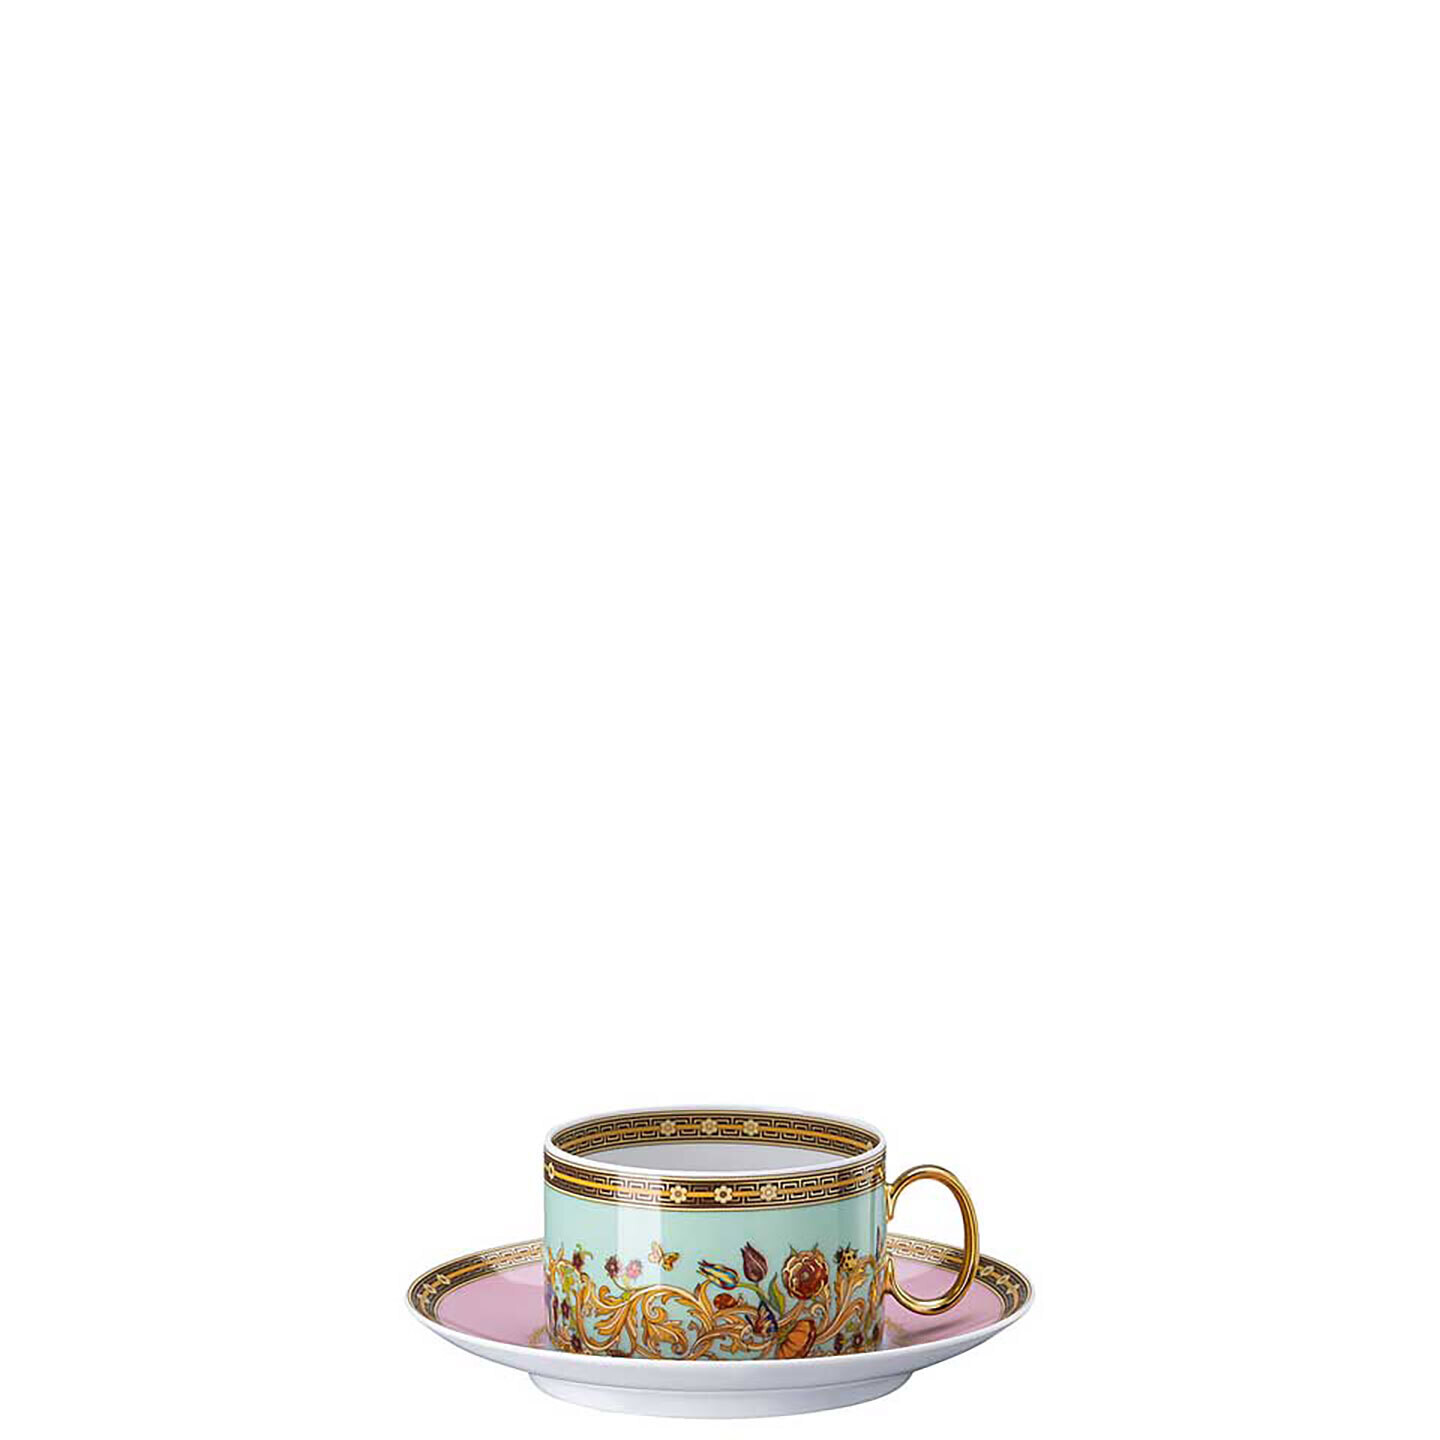 Versace Butterfly Garden Modern Tea Cup & Saucer 19335-409609-14640